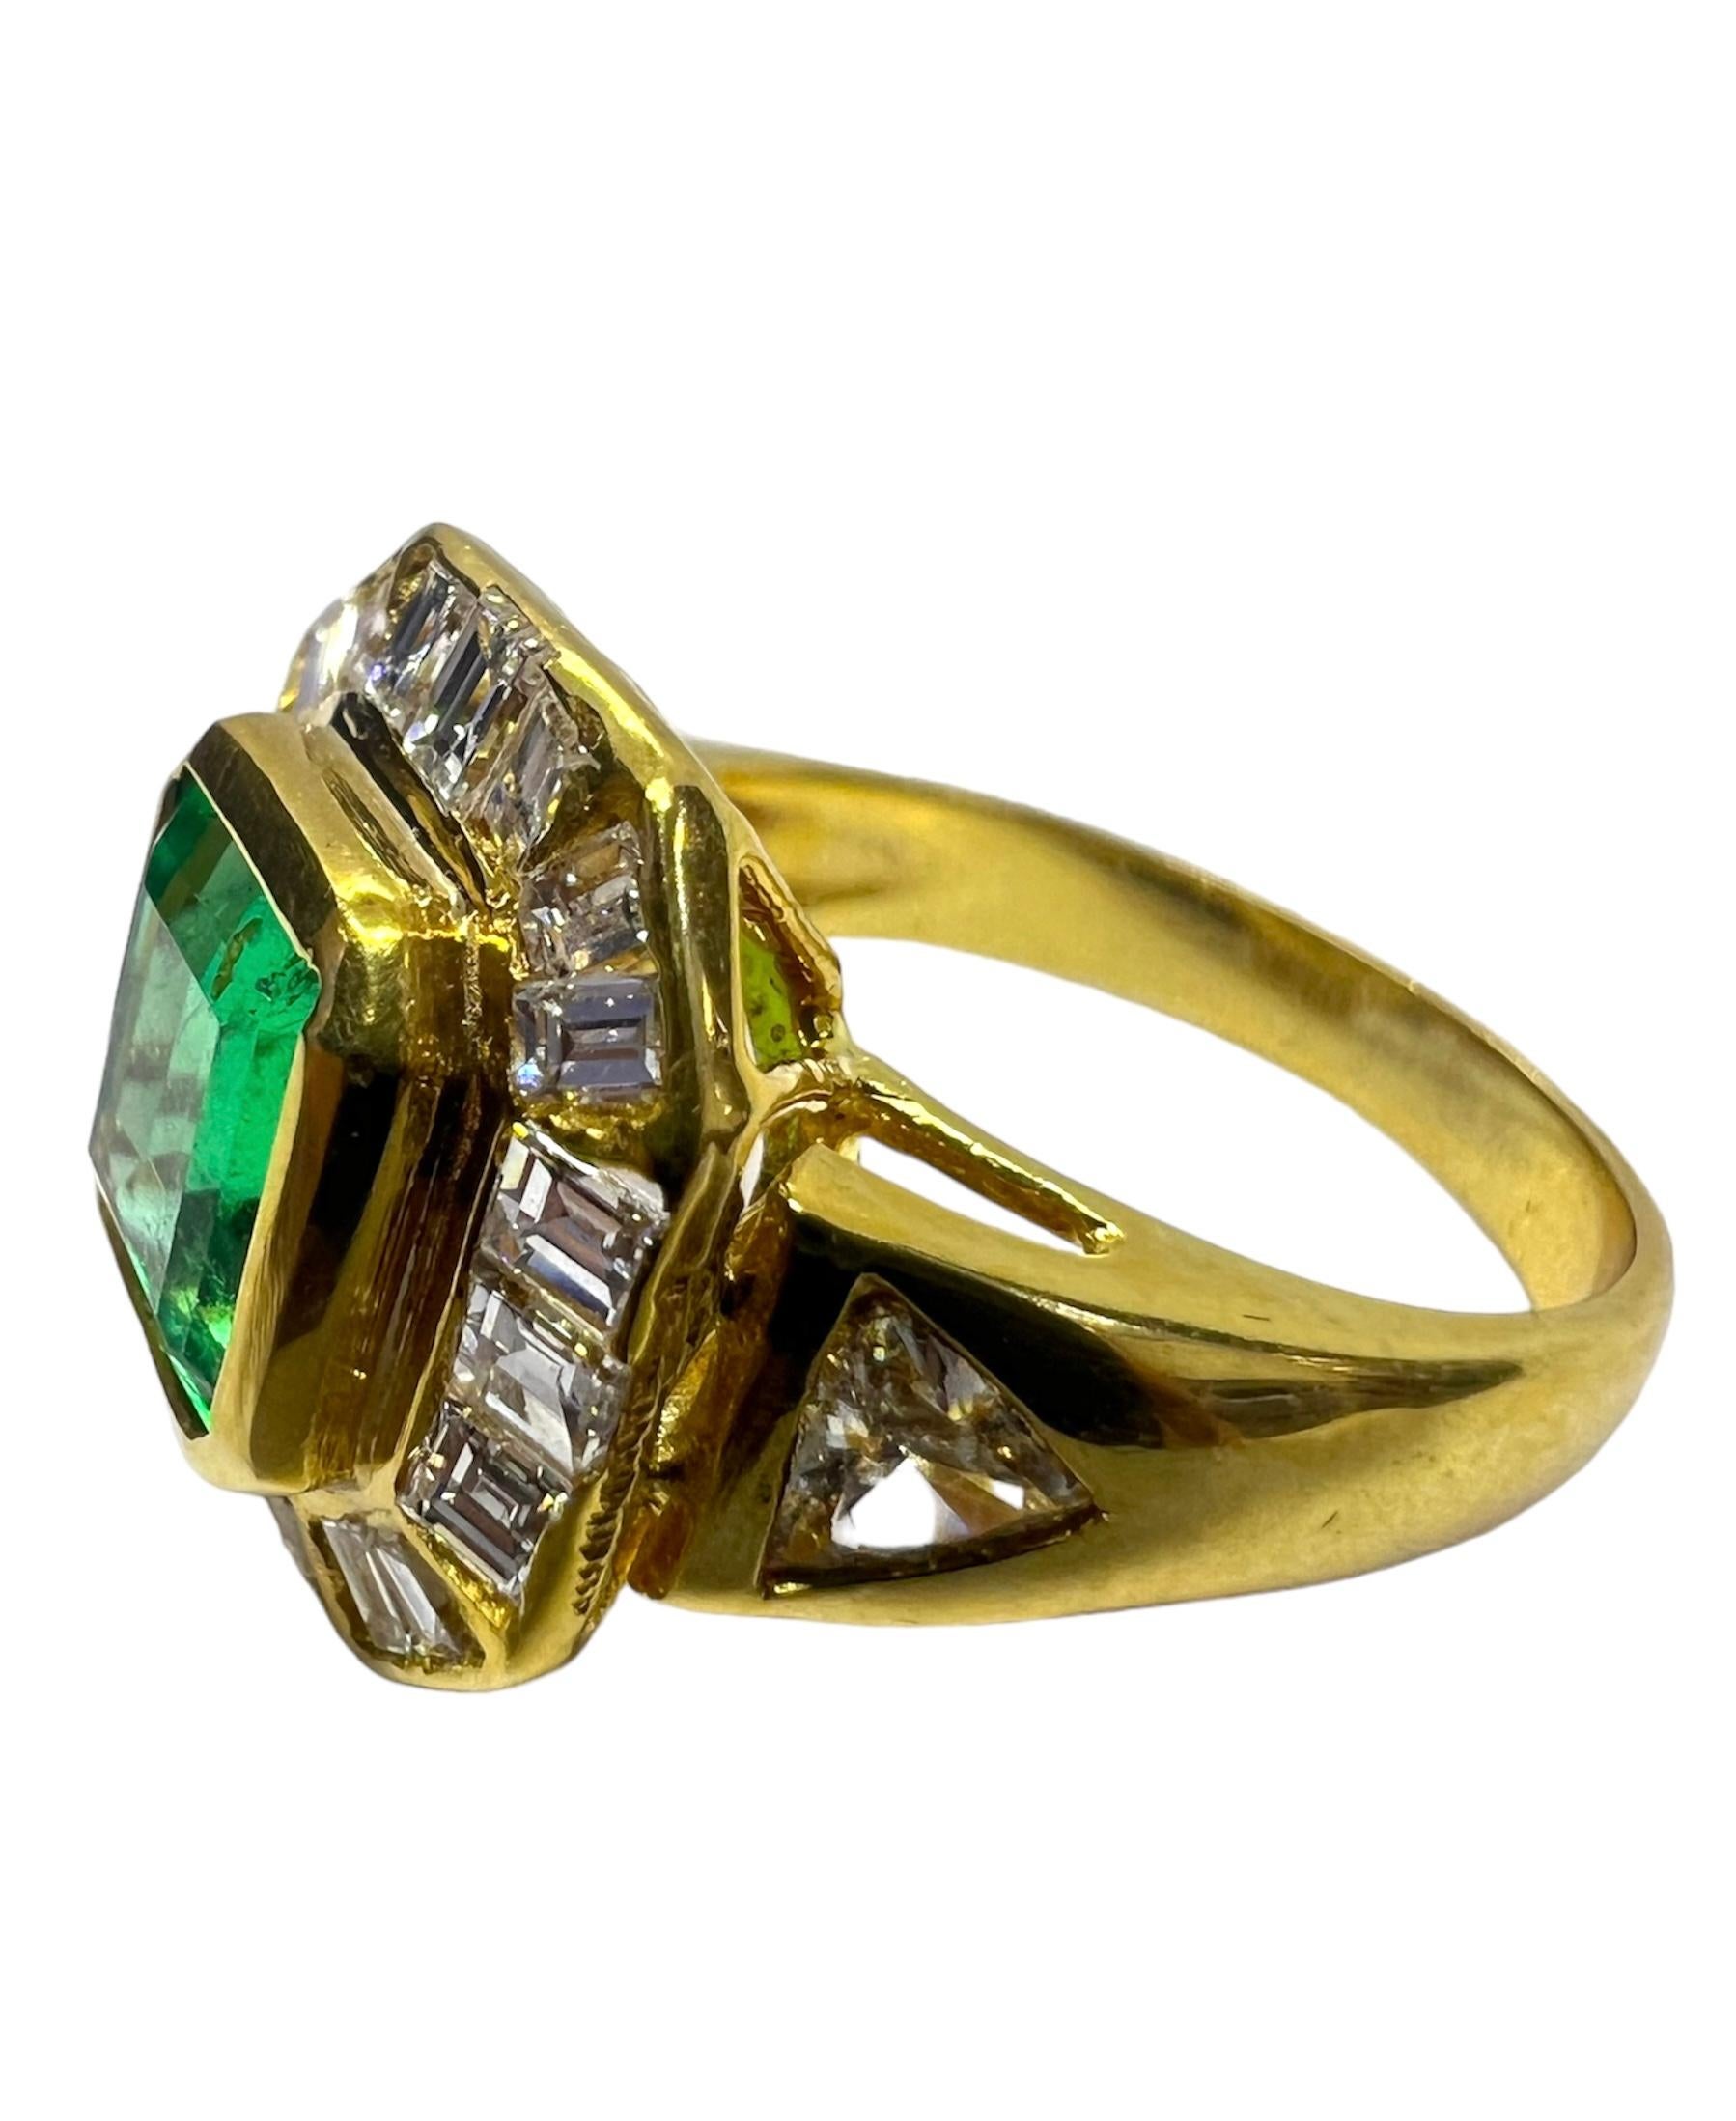 Ring aus 18 Karat Gelbgold mit Smaragd und Diamant.

Sophia D von Joseph Dardashti LTD ist seit 35 Jahren weltweit bekannt und lässt sich vom klassischen Art-Déco-Design inspirieren, das mit modernen Fertigungstechniken verschmilzt.